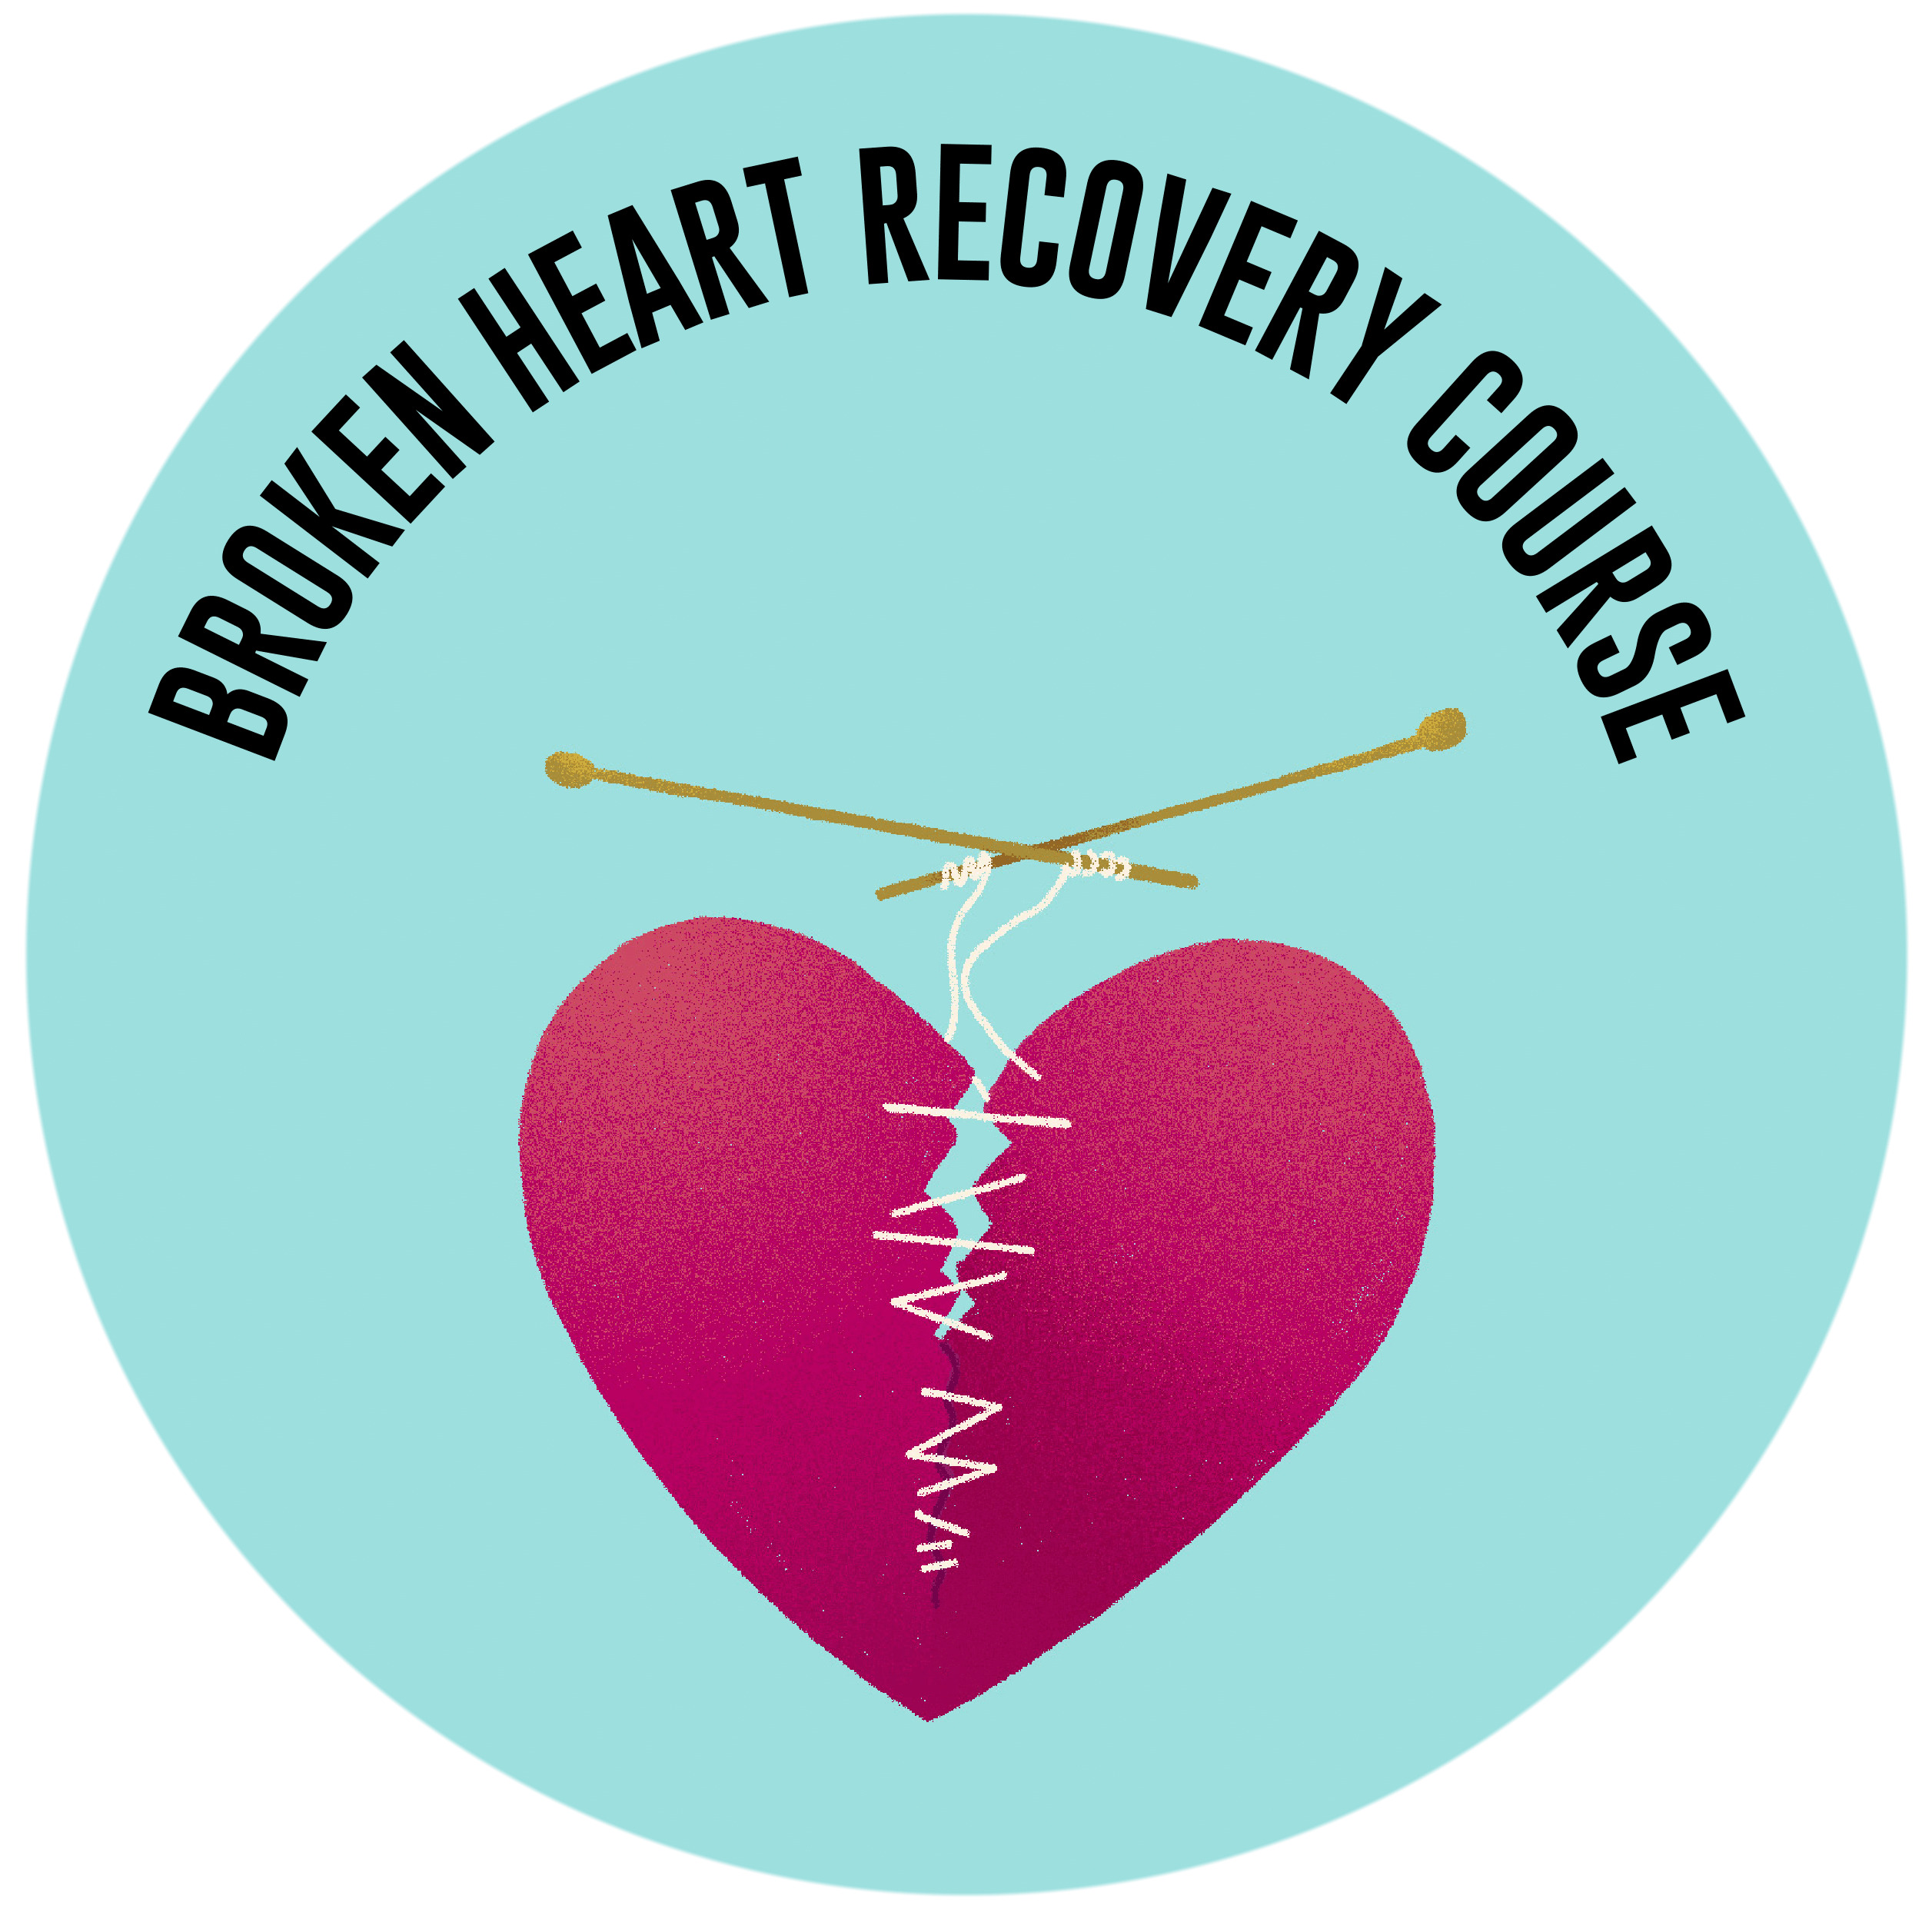 BROKEN HEART RECOVERY COURSE